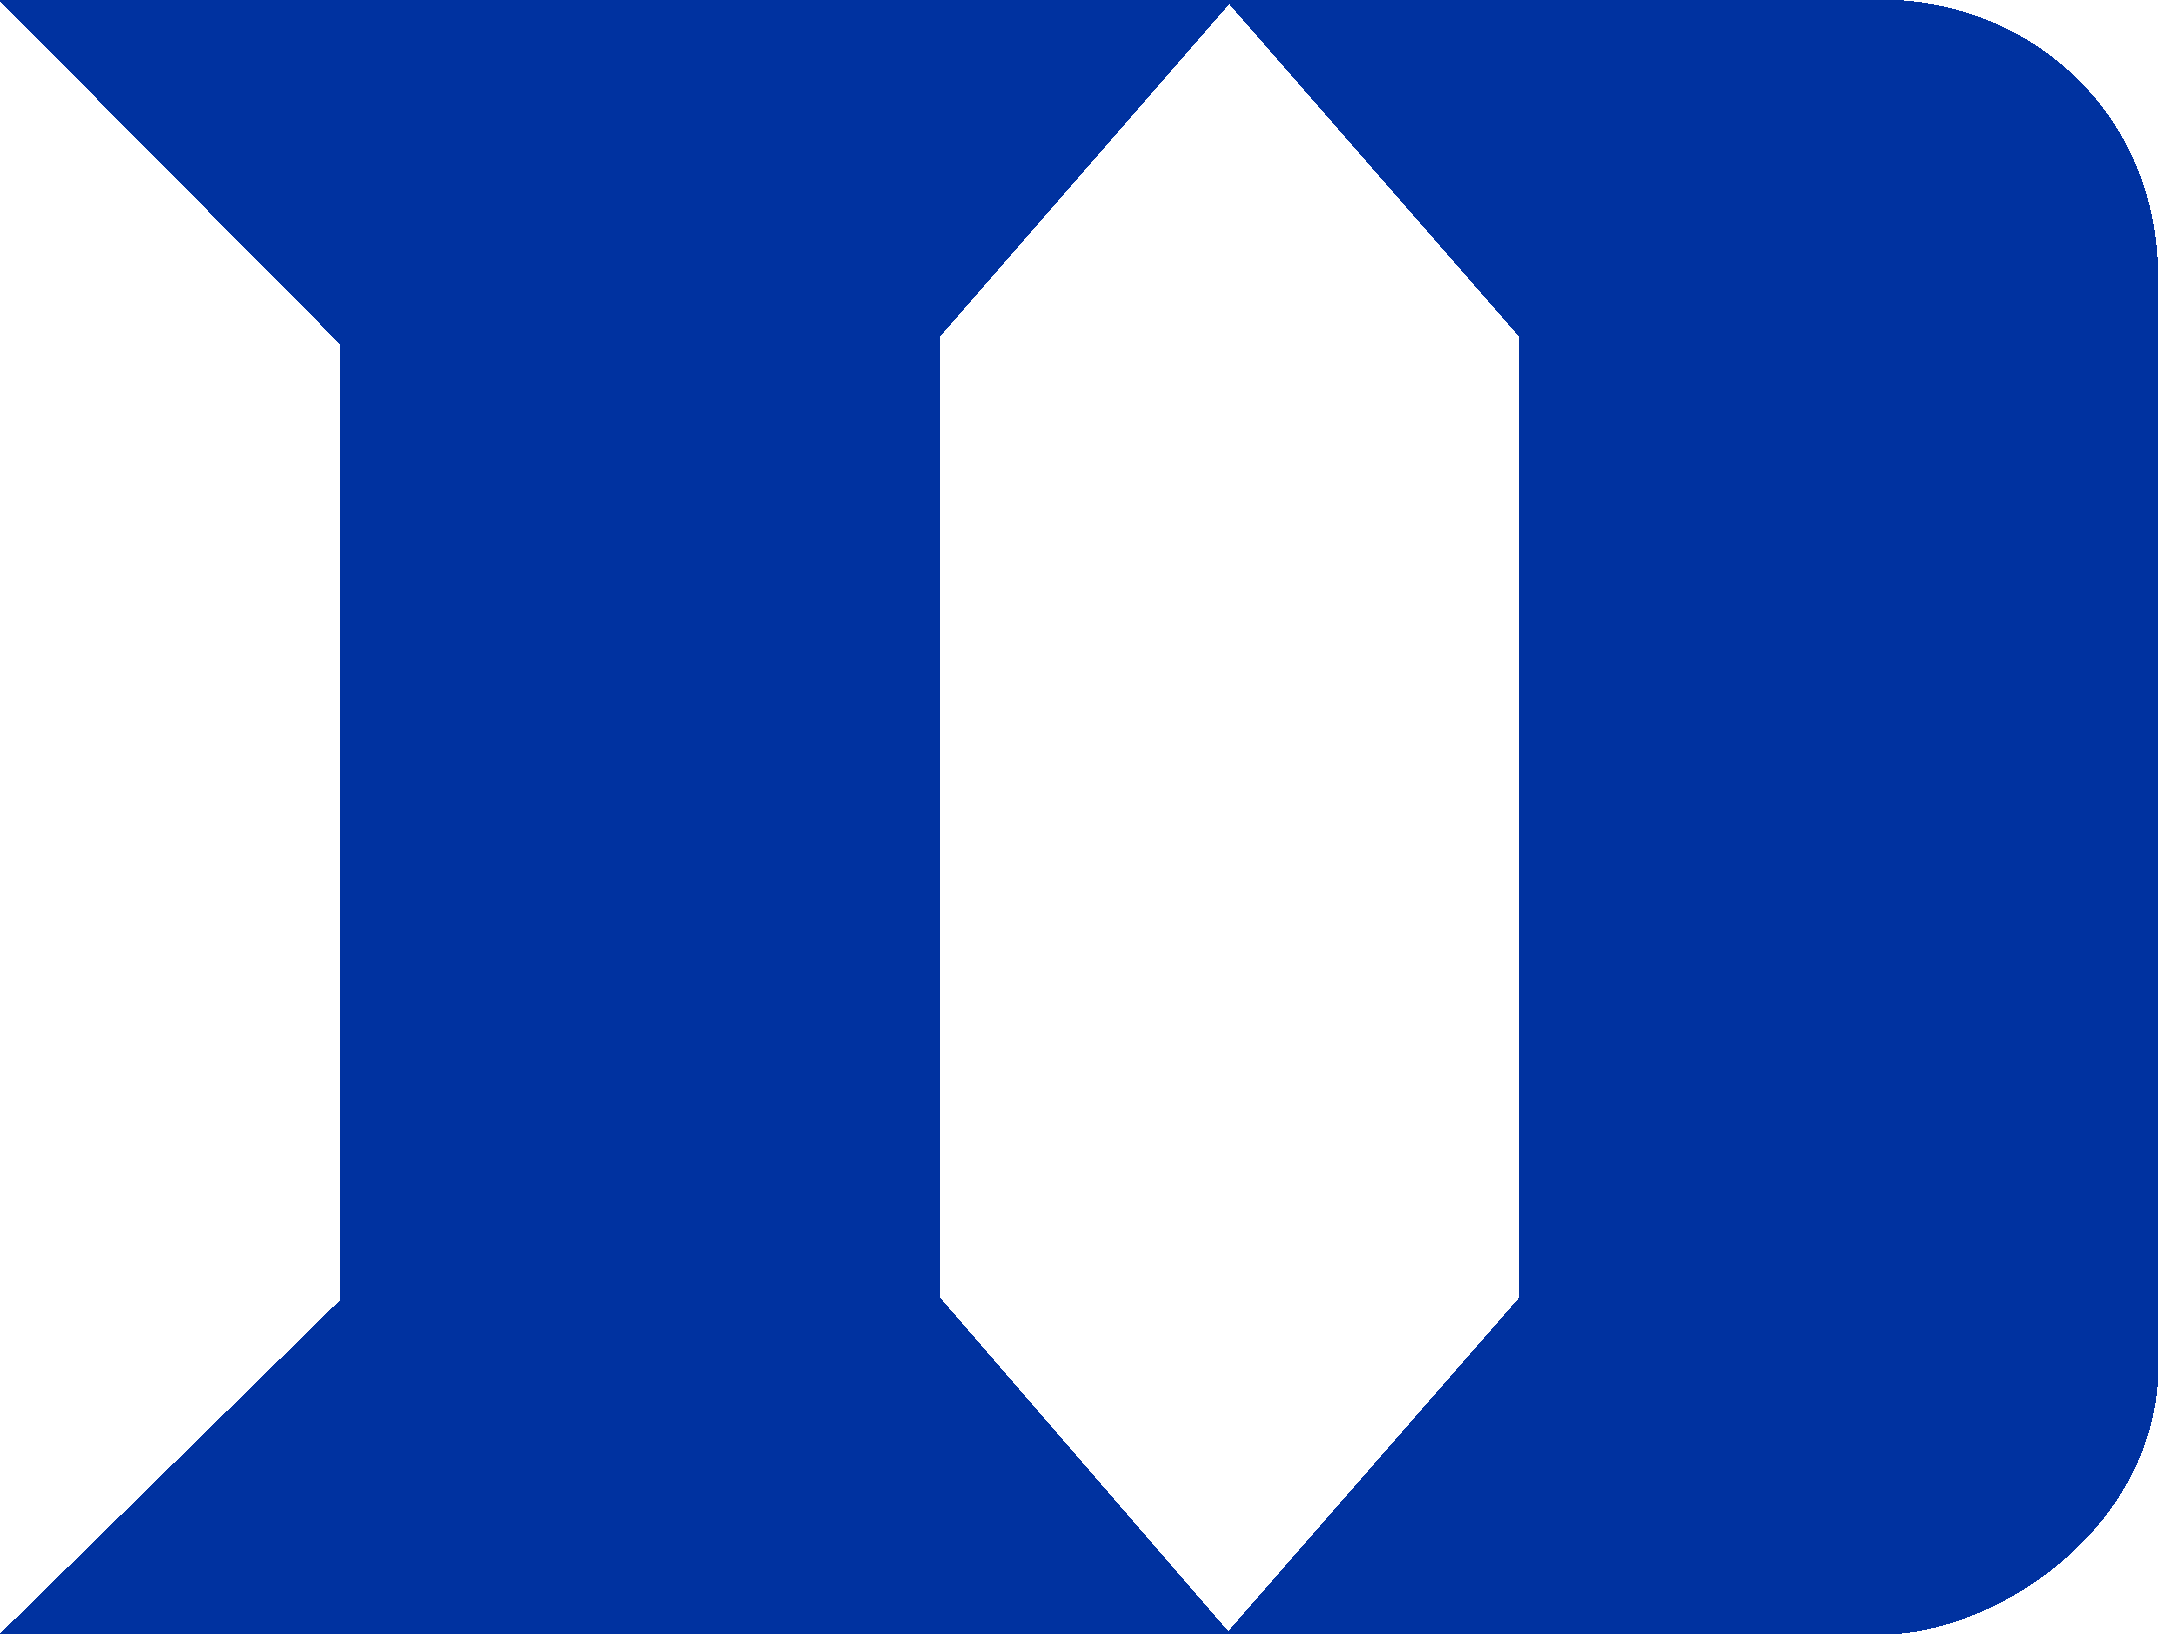 Duke Logo (Basketball - Blue Devils)